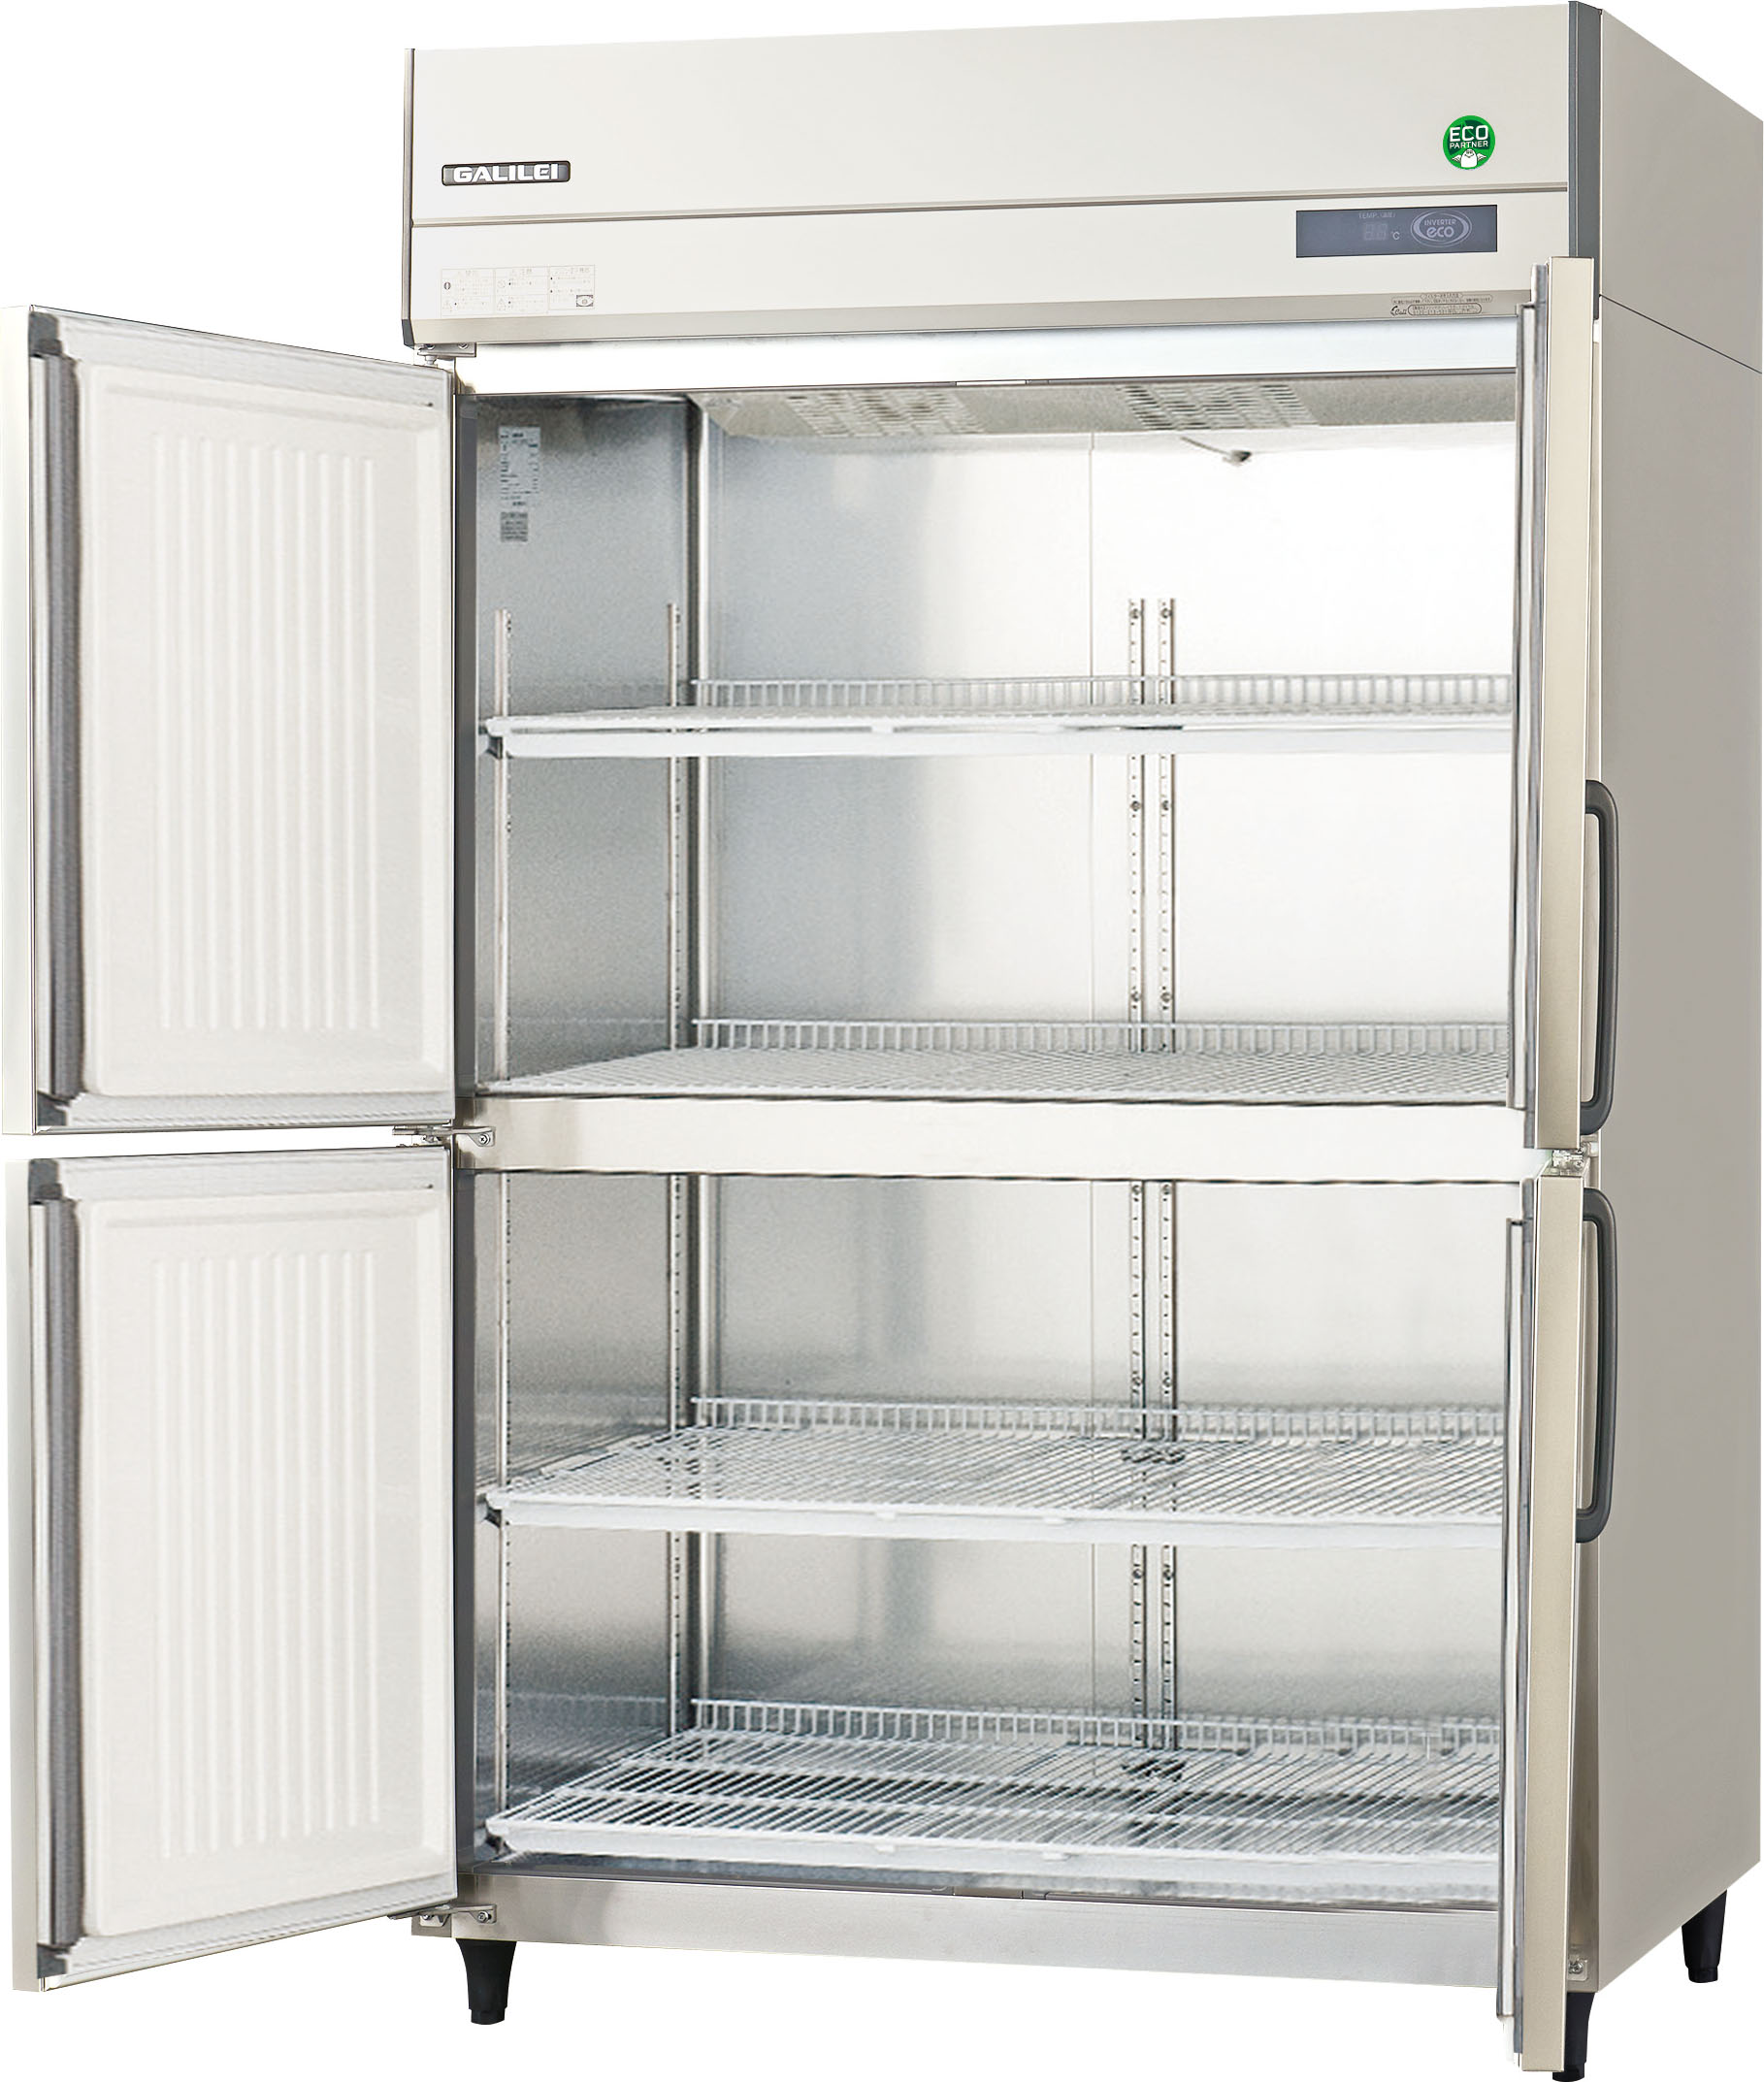 GRD-120RX-Fフクシマガリレイ 縦型業務用冷蔵庫(ノンフロン冷媒仕様 